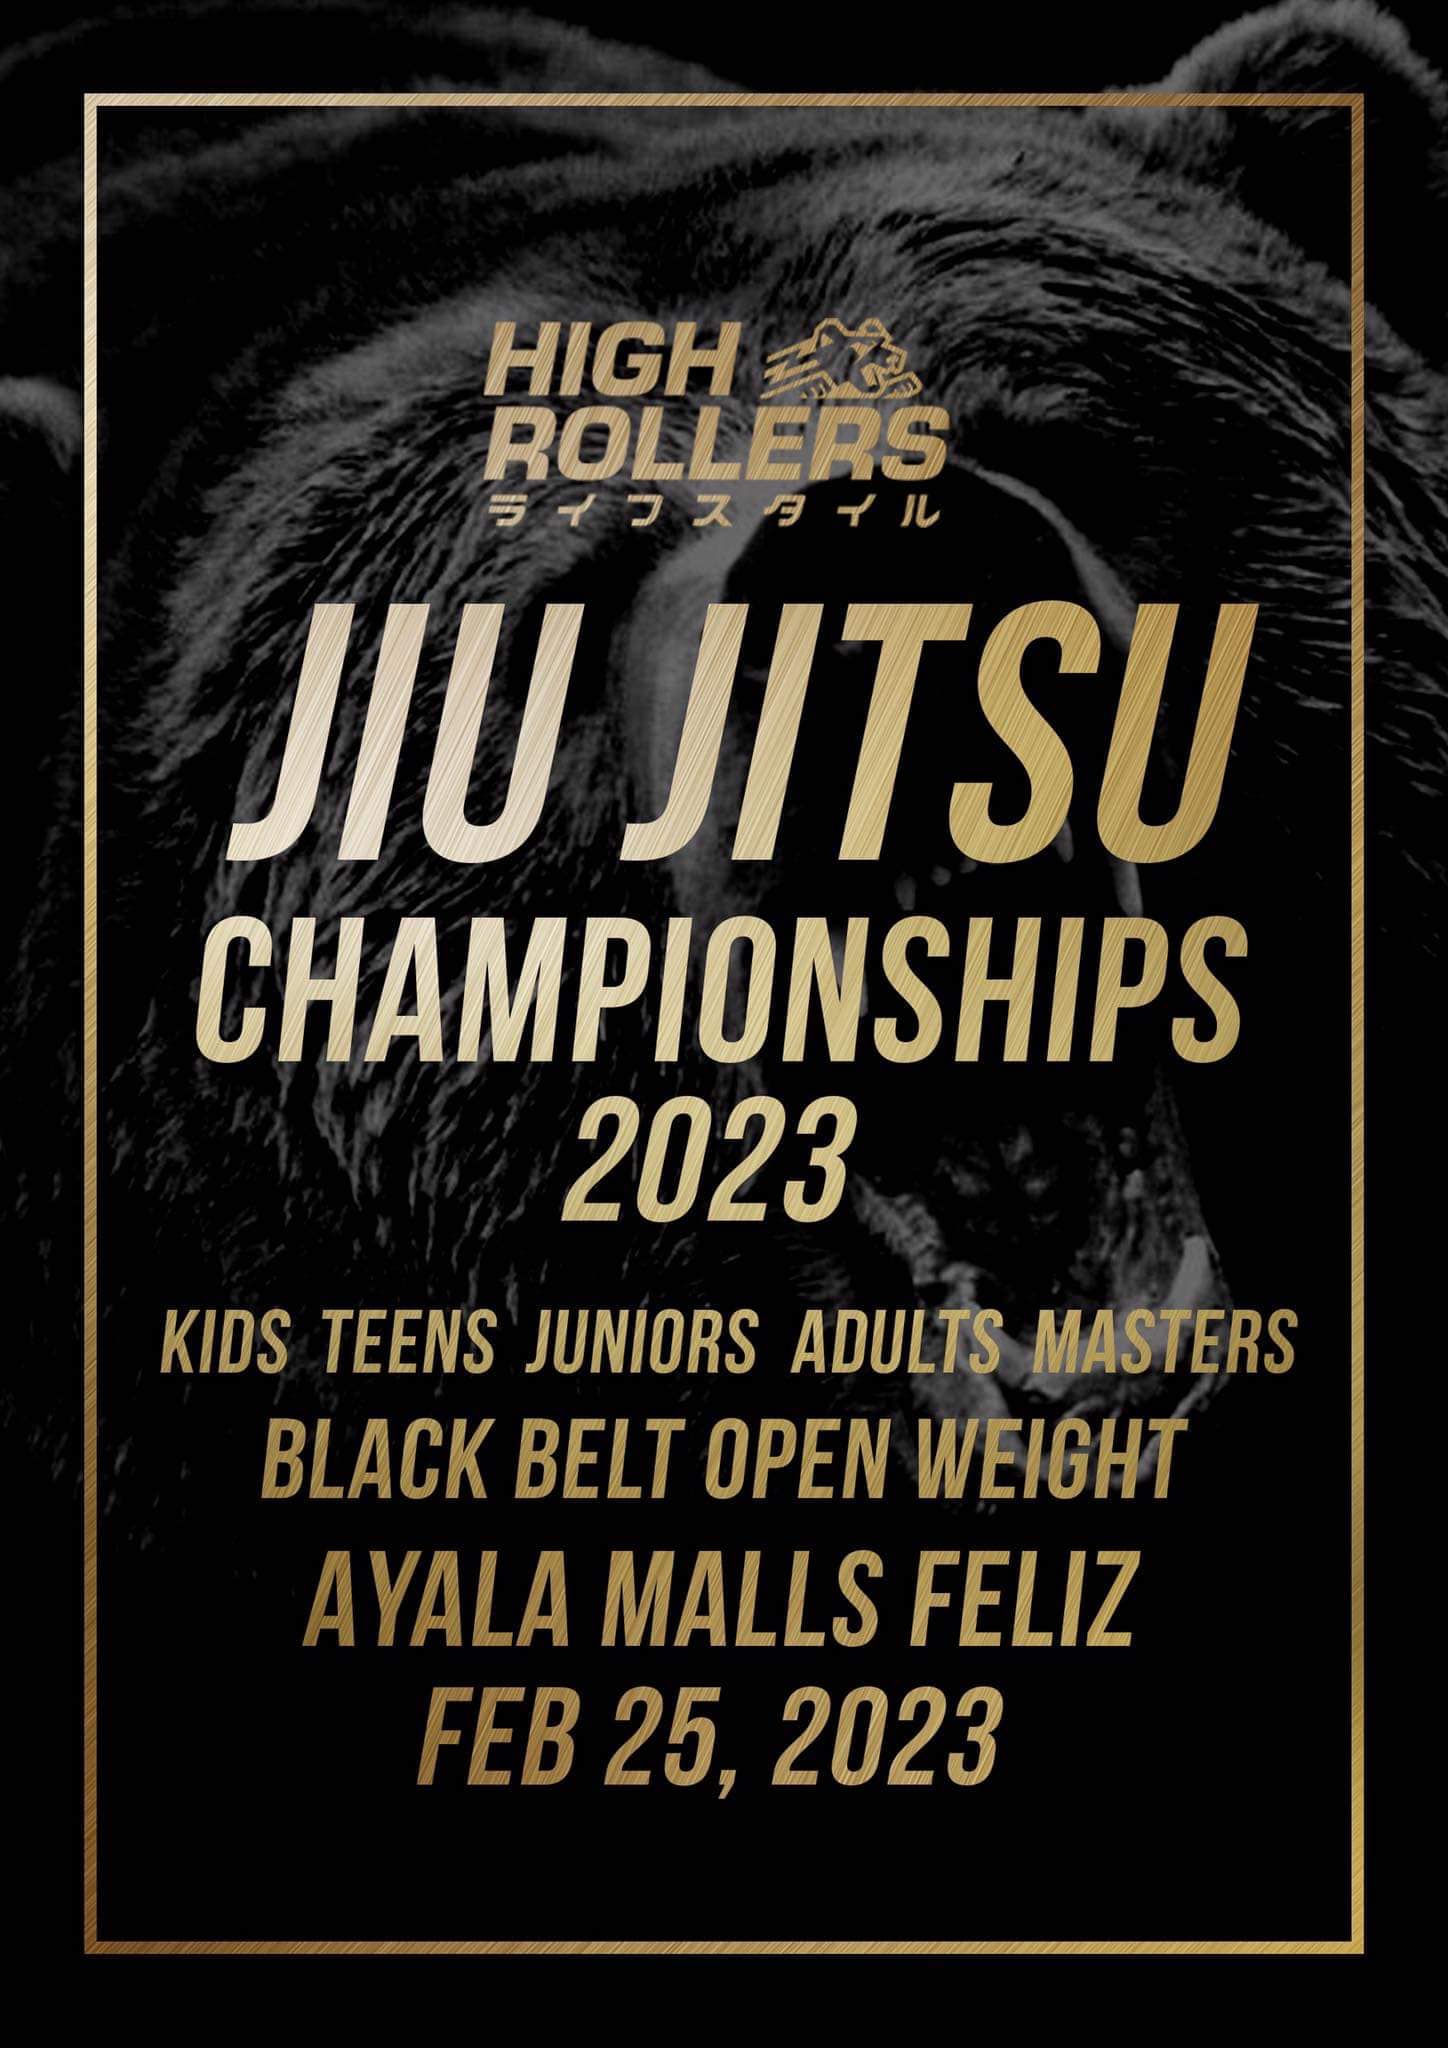 High Rollers Lifestyle Jiu-Jitsu Championship